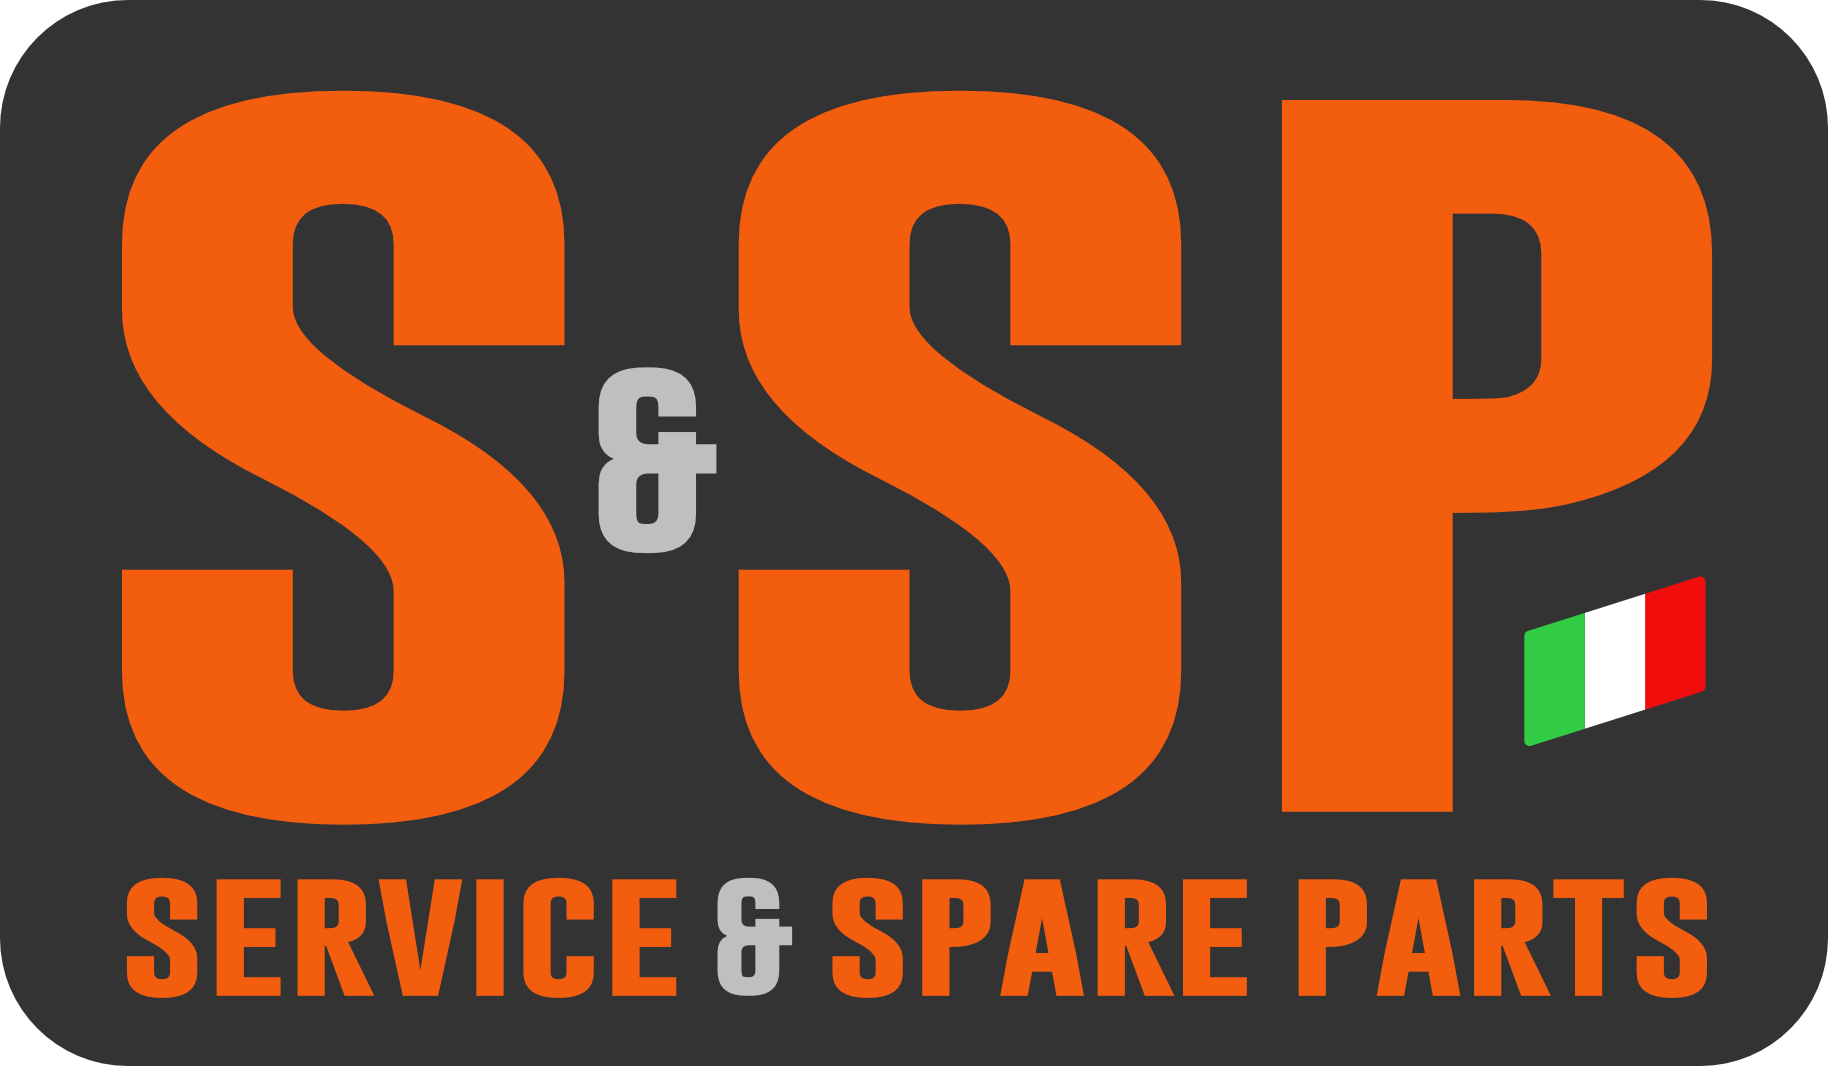 Download SSP Group Logo in SVG Vector or PNG File Format - Logo.wine